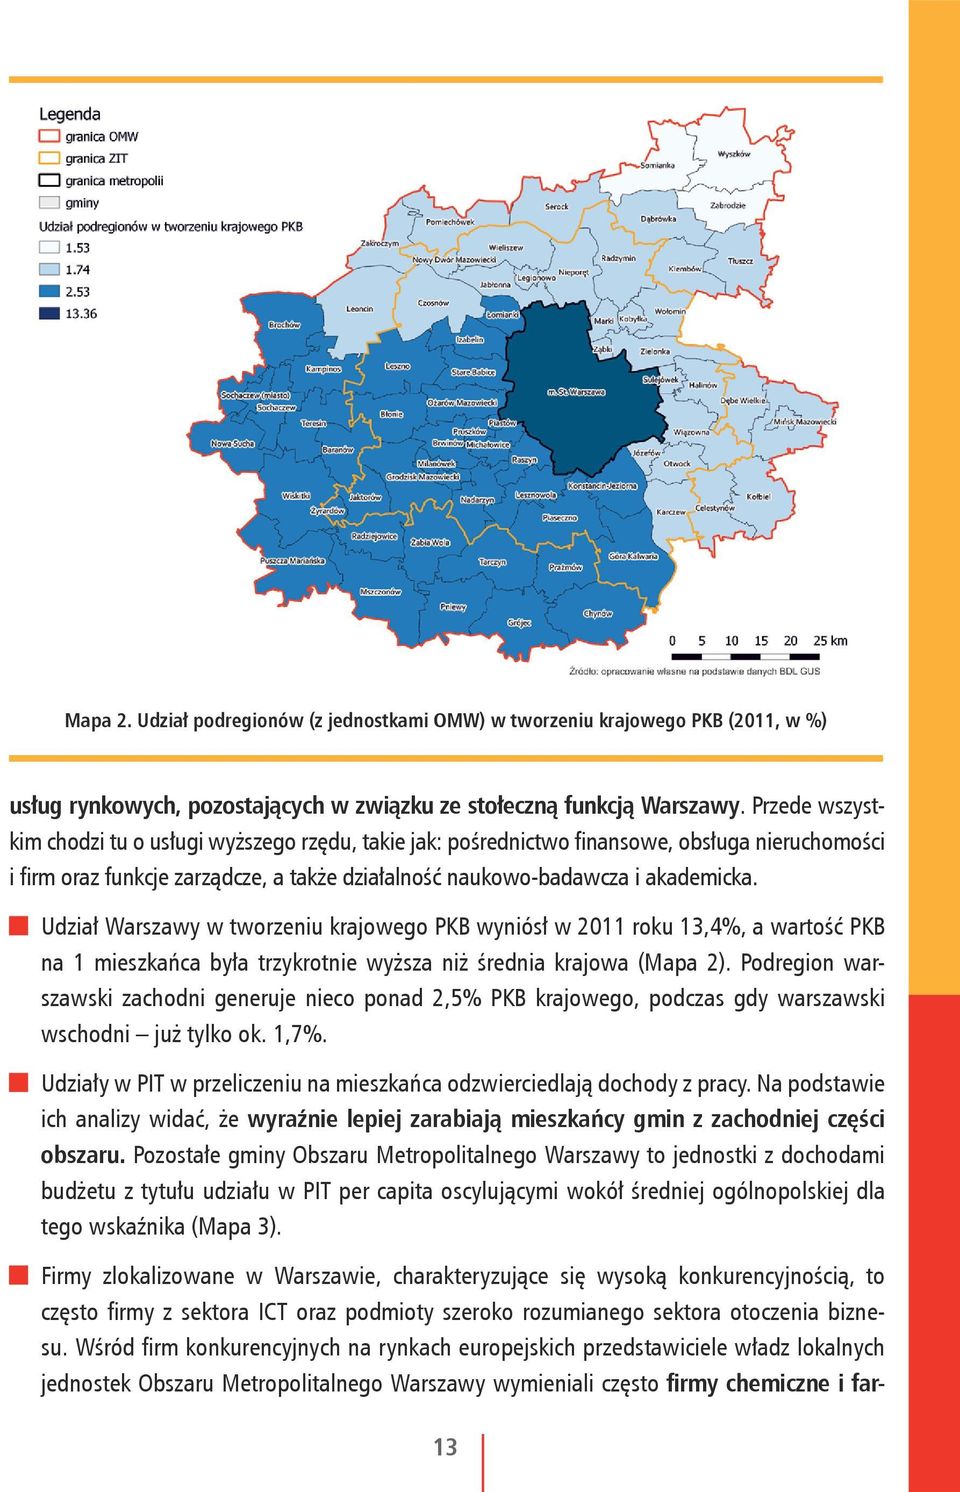 Udział Warszawy w tworzeniu krajowego PKB wyniósł w 2011 roku 13,4%, a wartość PKB na 1 mieszkańca była trzykrotnie wyższa niż średnia krajowa (Mapa 2).